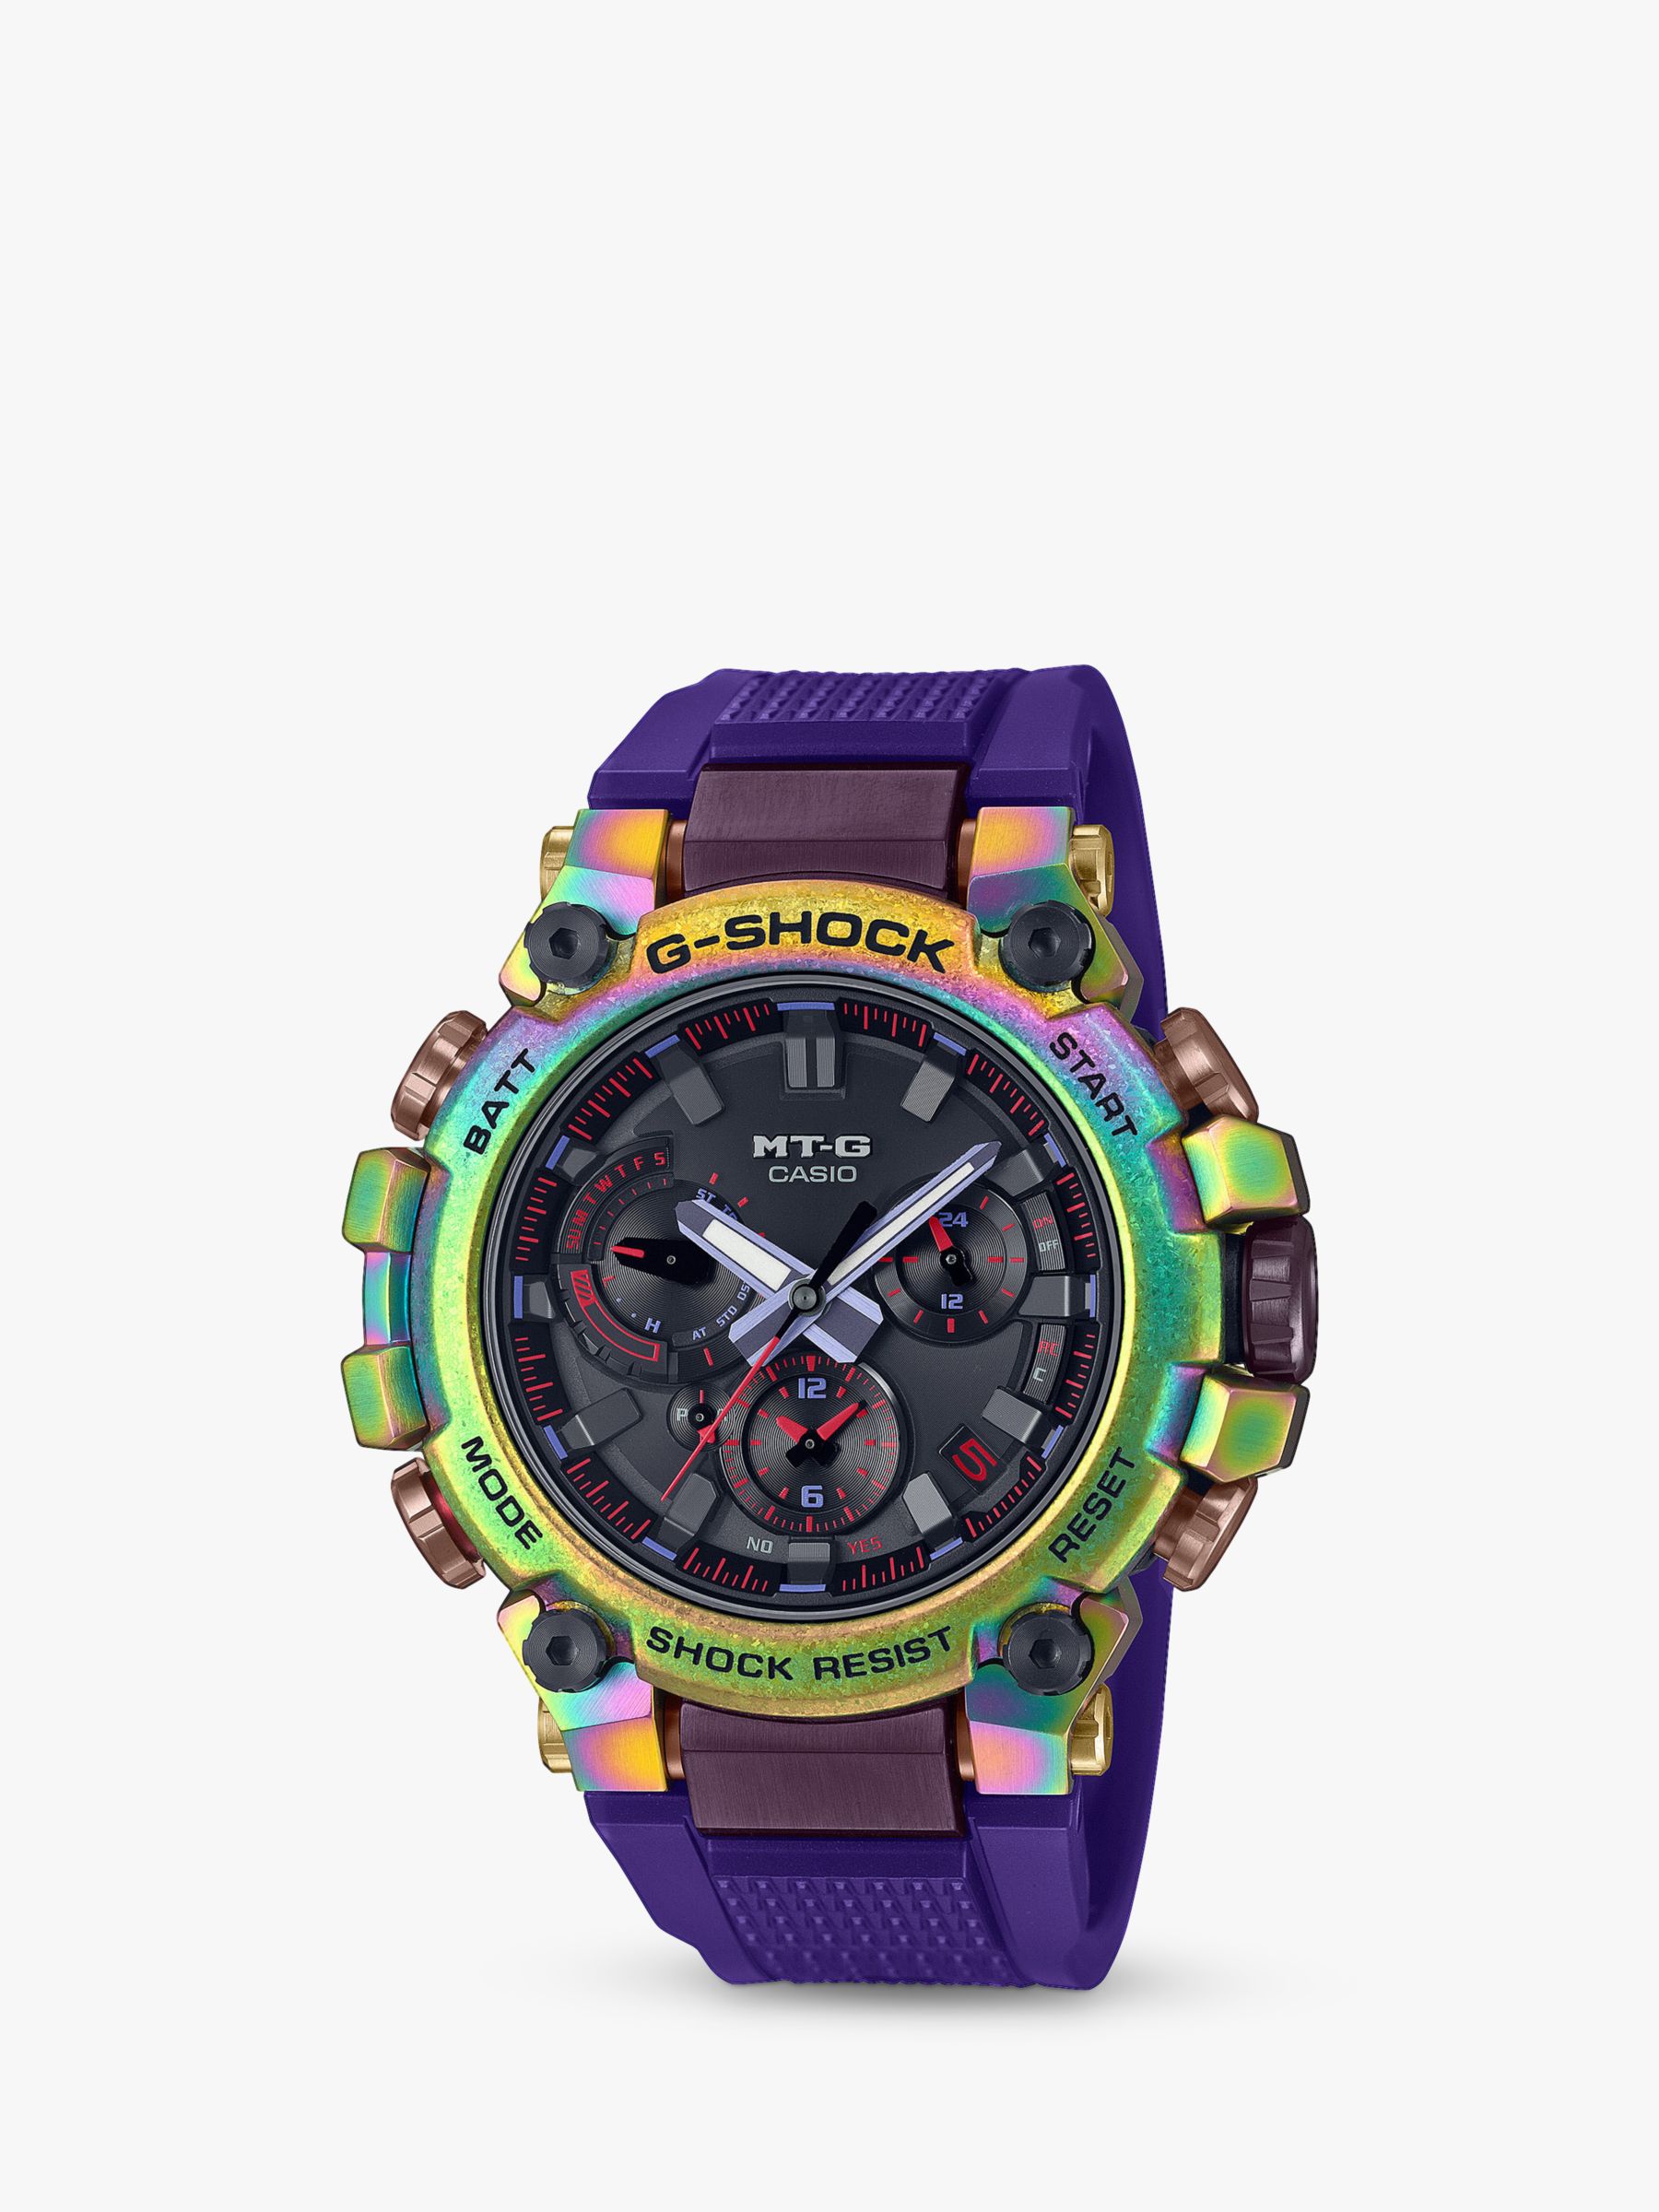 G-SHOCK Aurora Oval Limited Edition Mens Watch MTG-B3000PRB-1AER